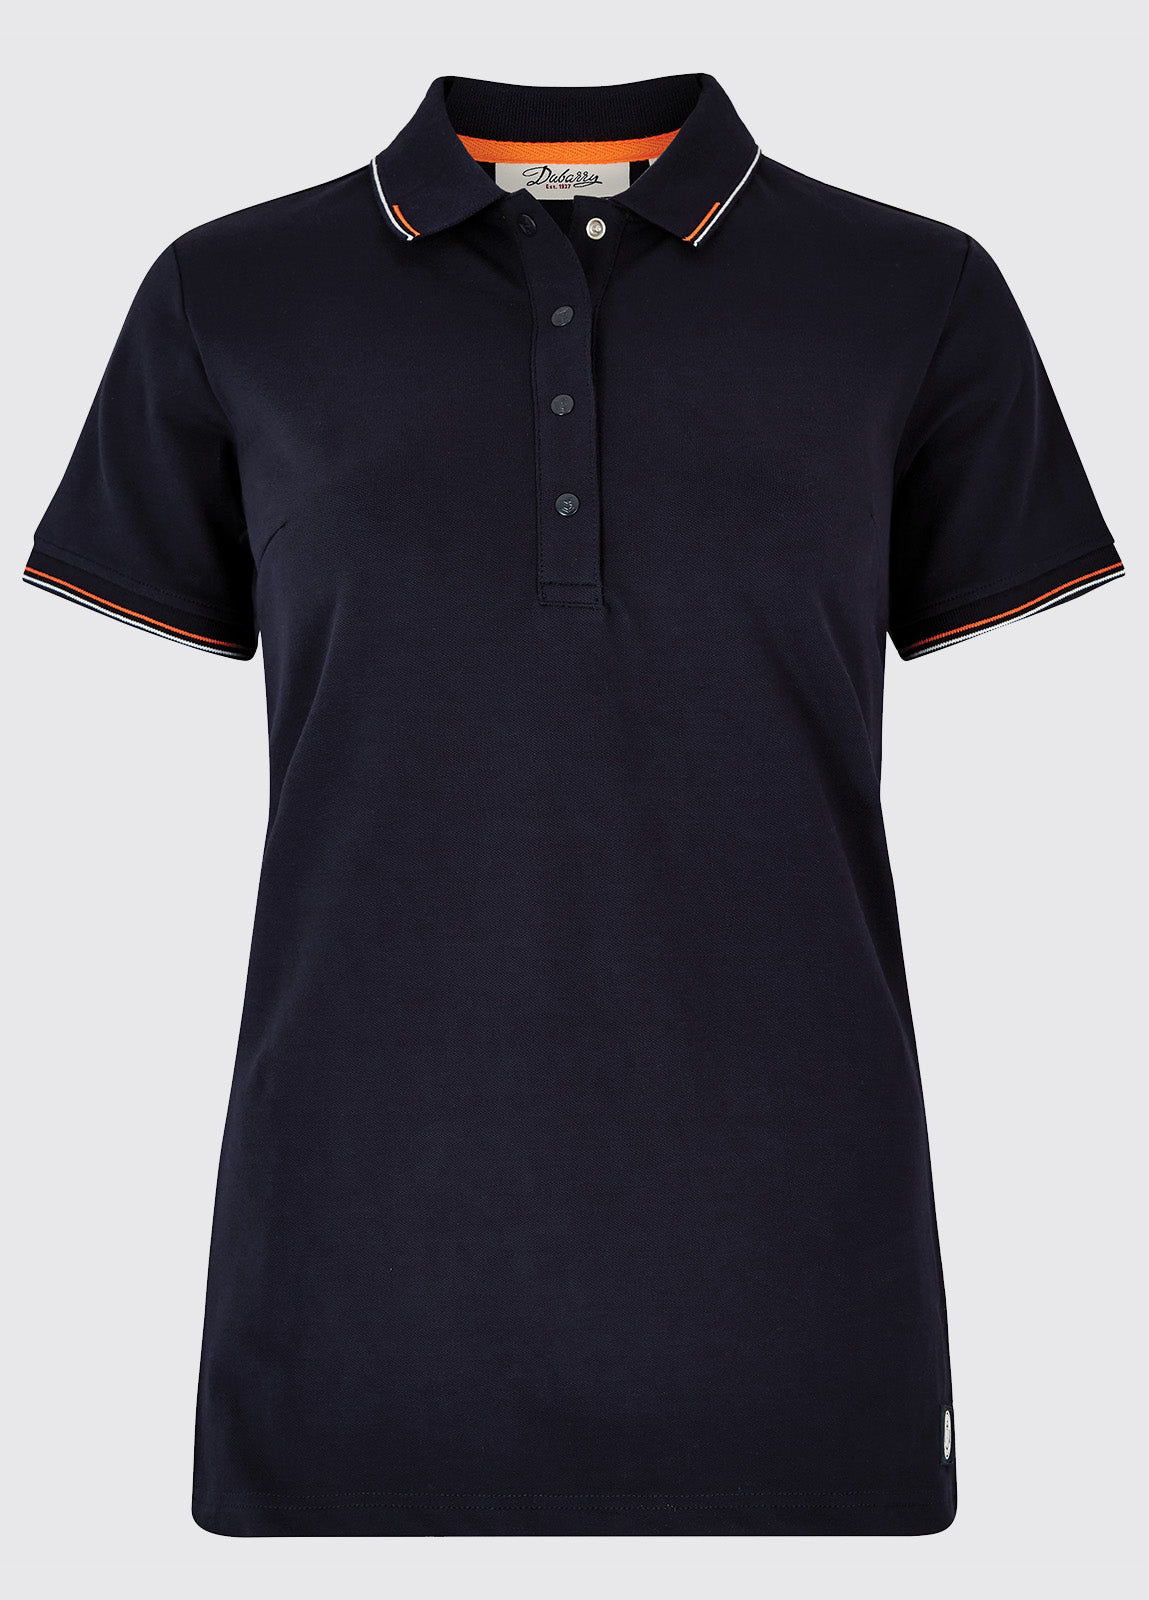 Dubarry Bagenalstown Polo Shirt - Navy